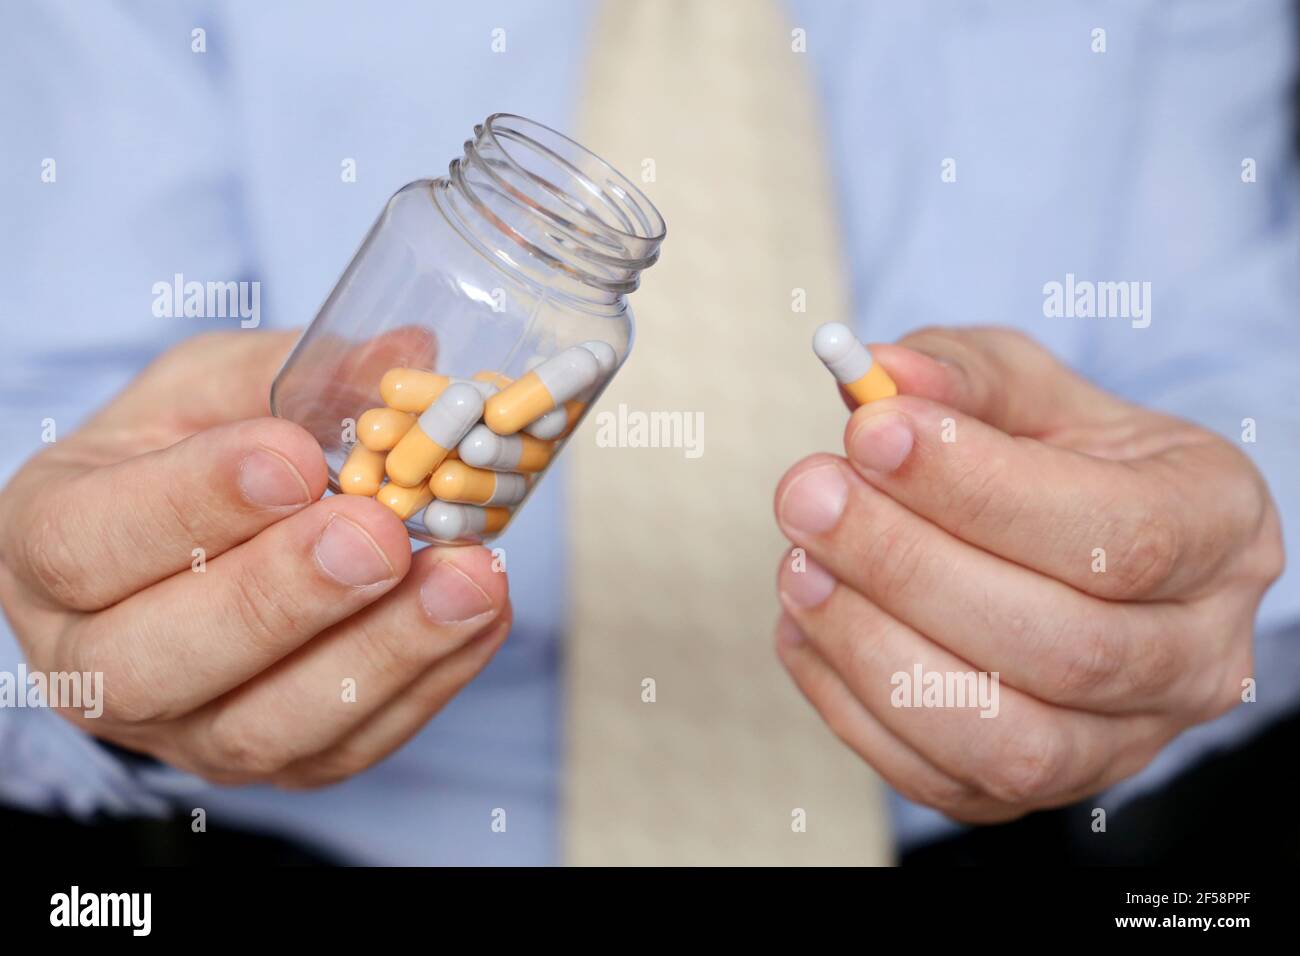 Homme dans les vêtements de bureau prenant des pilules, bouteille de médicament dans les capsules de près. Concept d'antidépresseur, stress au travail, vitamines, dose de médicaments Banque D'Images